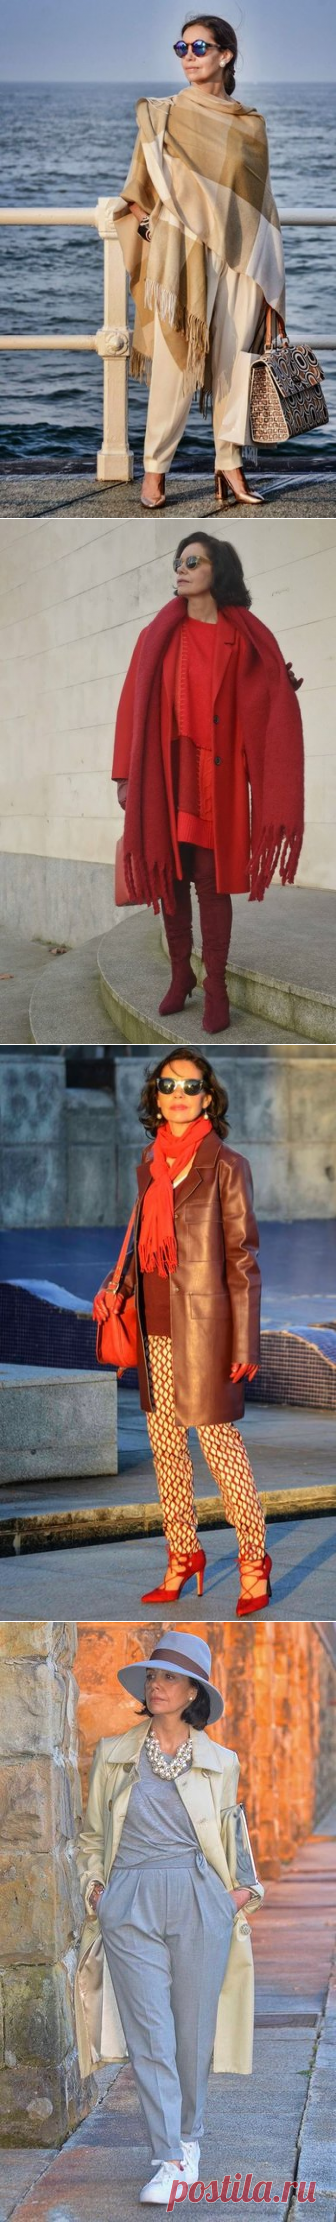 Возрастная мода - 10 шикарных образов от испанской fashion-блогера, вполне уместные и у нас